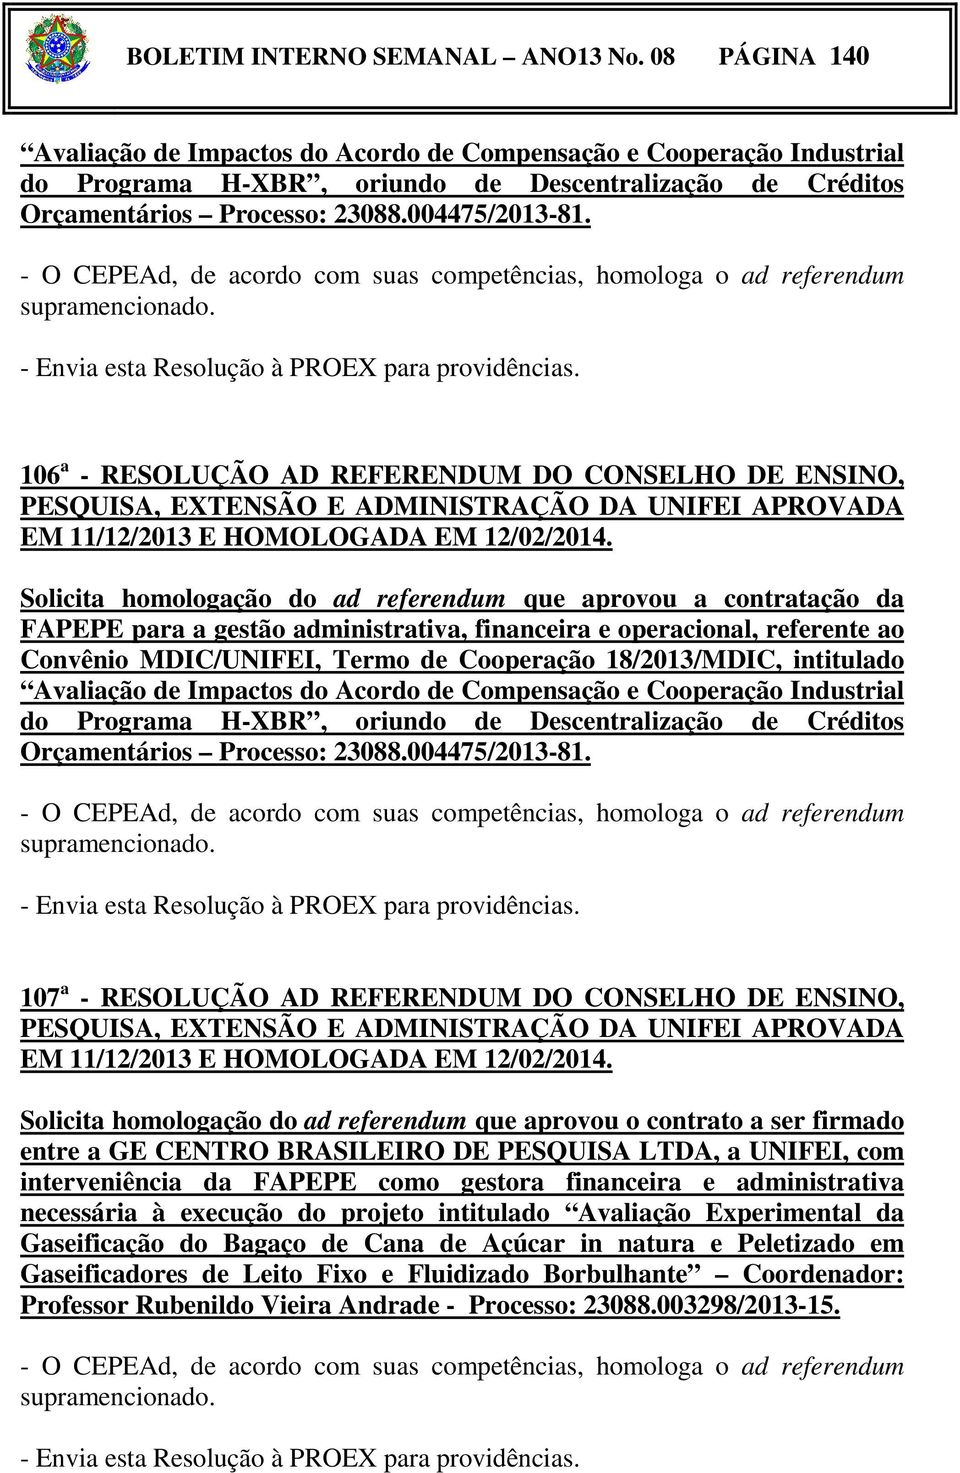 - Envia esta Resolução à PROEX para providências. 106 a - RESOLUÇÃO AD REFERENDUM DO CONSELHO DE ENSINO, EM 11/12/2013 E HOMOLOGADA EM 12/02/2014.